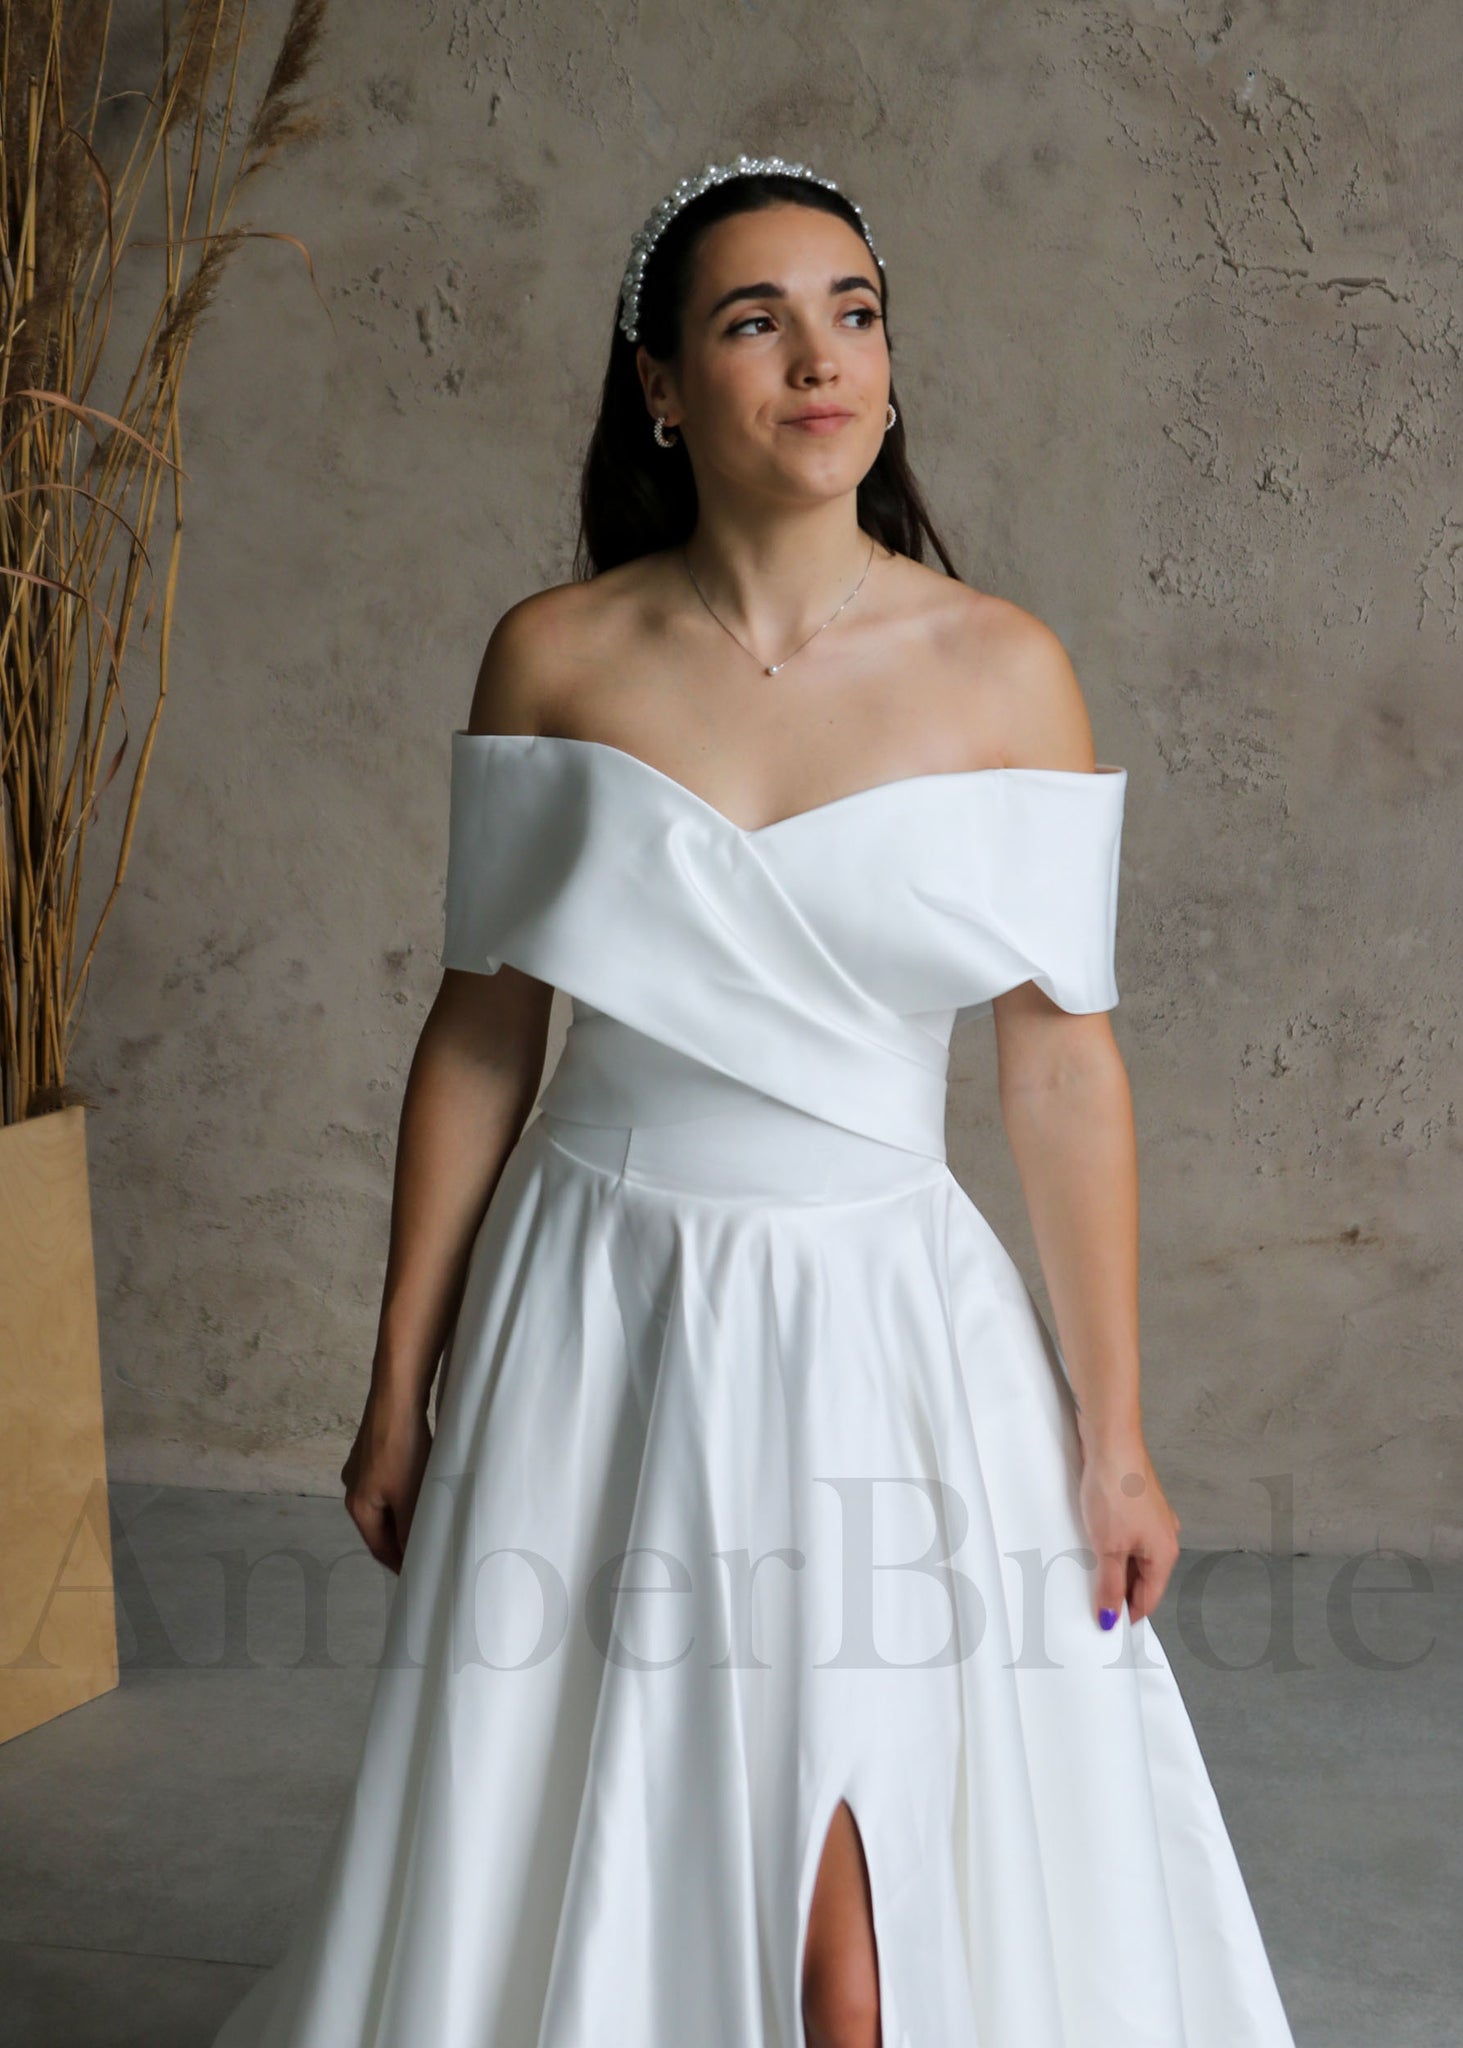 Elegant A Line Satin Wedding Dress with Off Shoulder Design and Slit